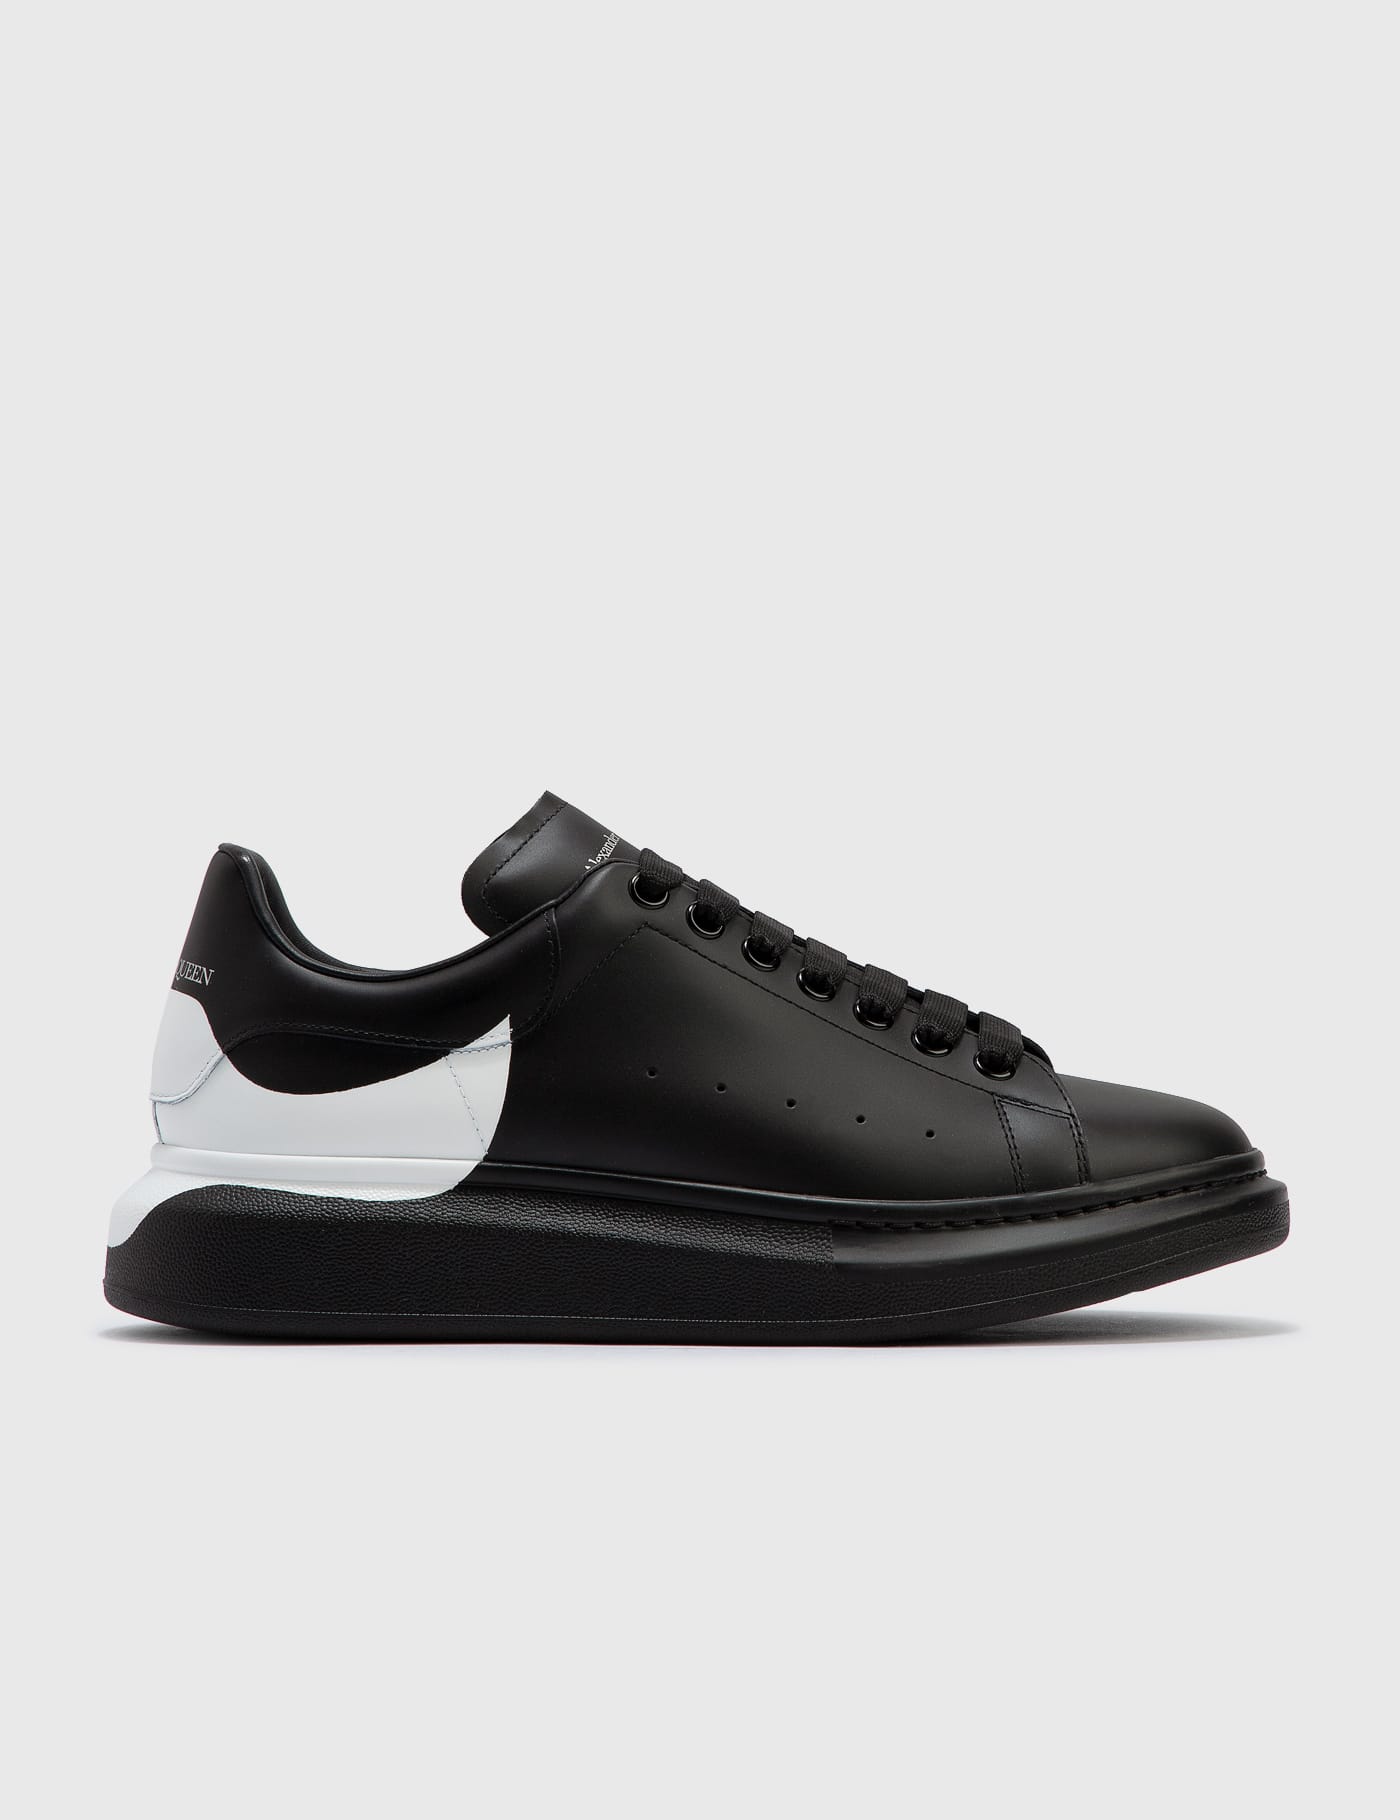 Still Popular?! Alexander McQueen Men's Oversized Sneaker in White/black  (Review) Legit Check Guide - YouTube